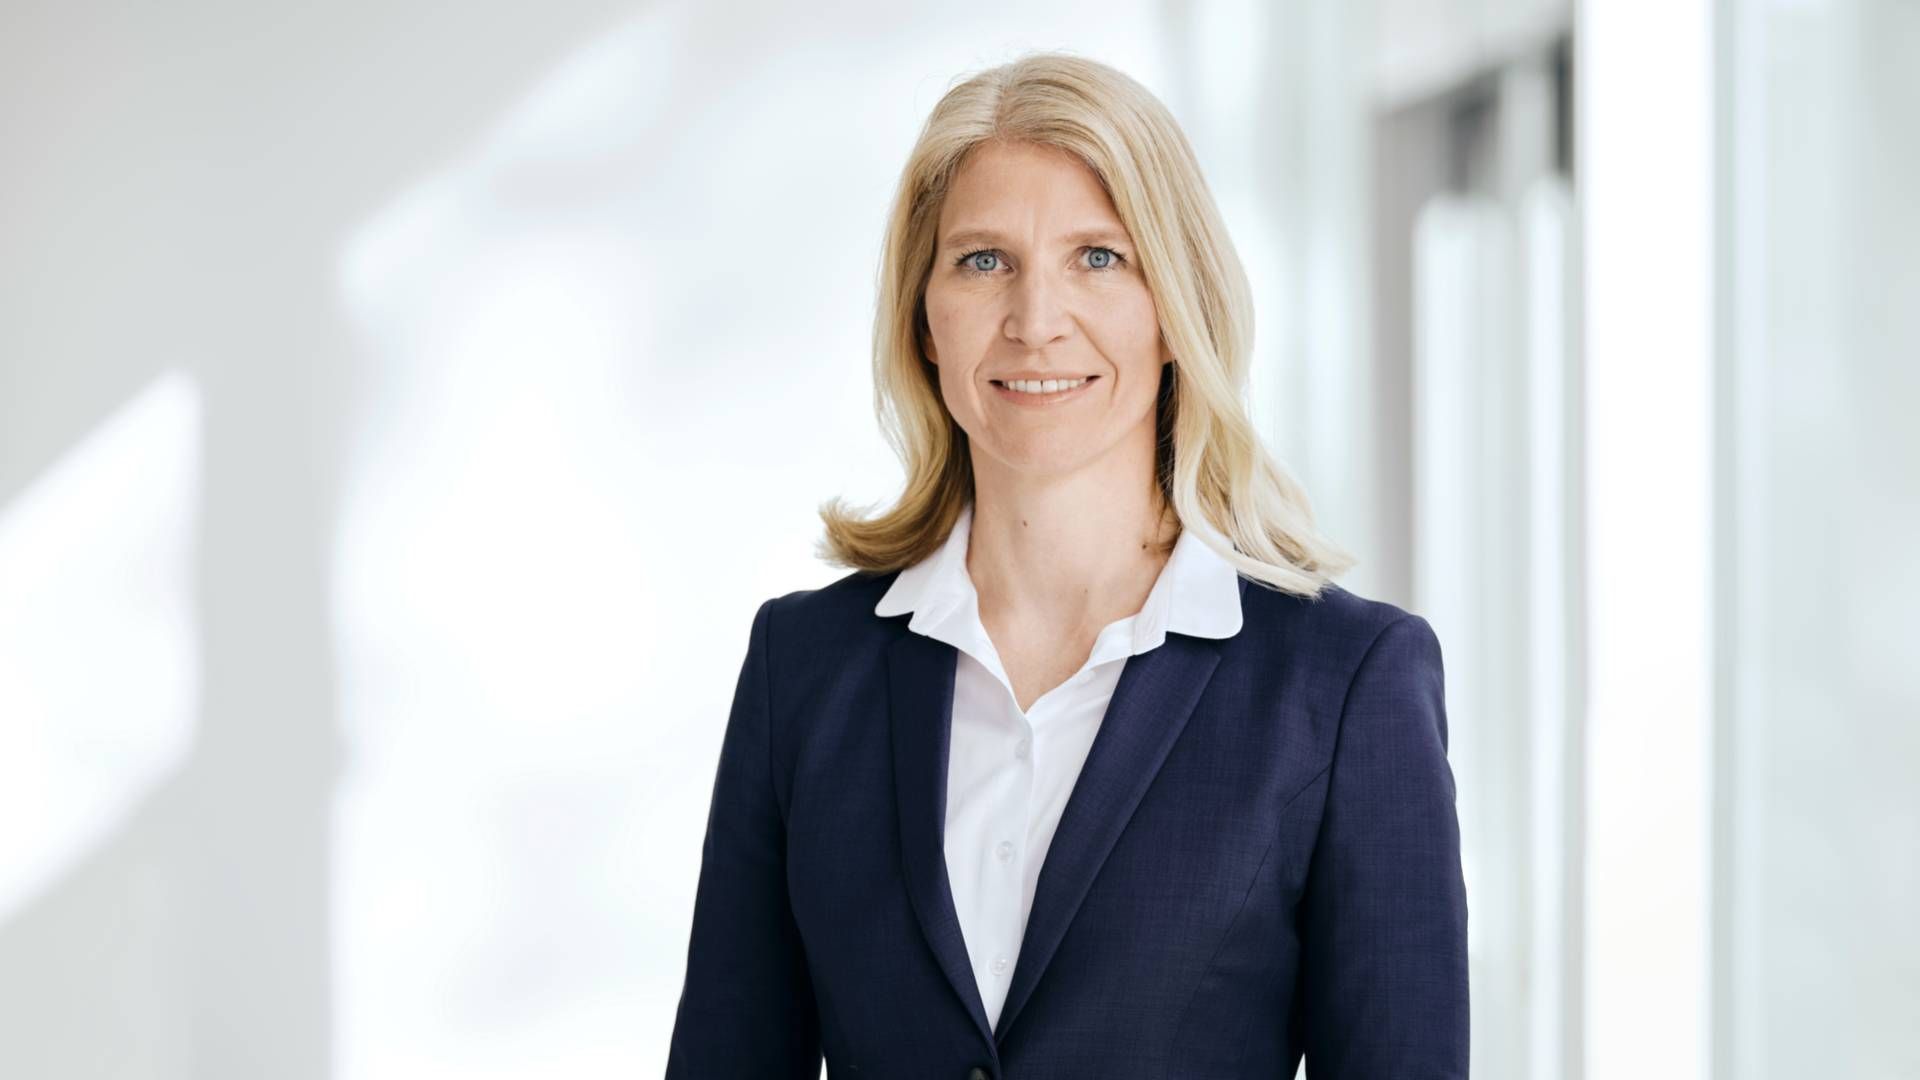 Melanie Kehr, Mitglied des Vorstands der KfW-Bankengruppe | Foto: KfW-Bildarchiv / Thorsten Futh